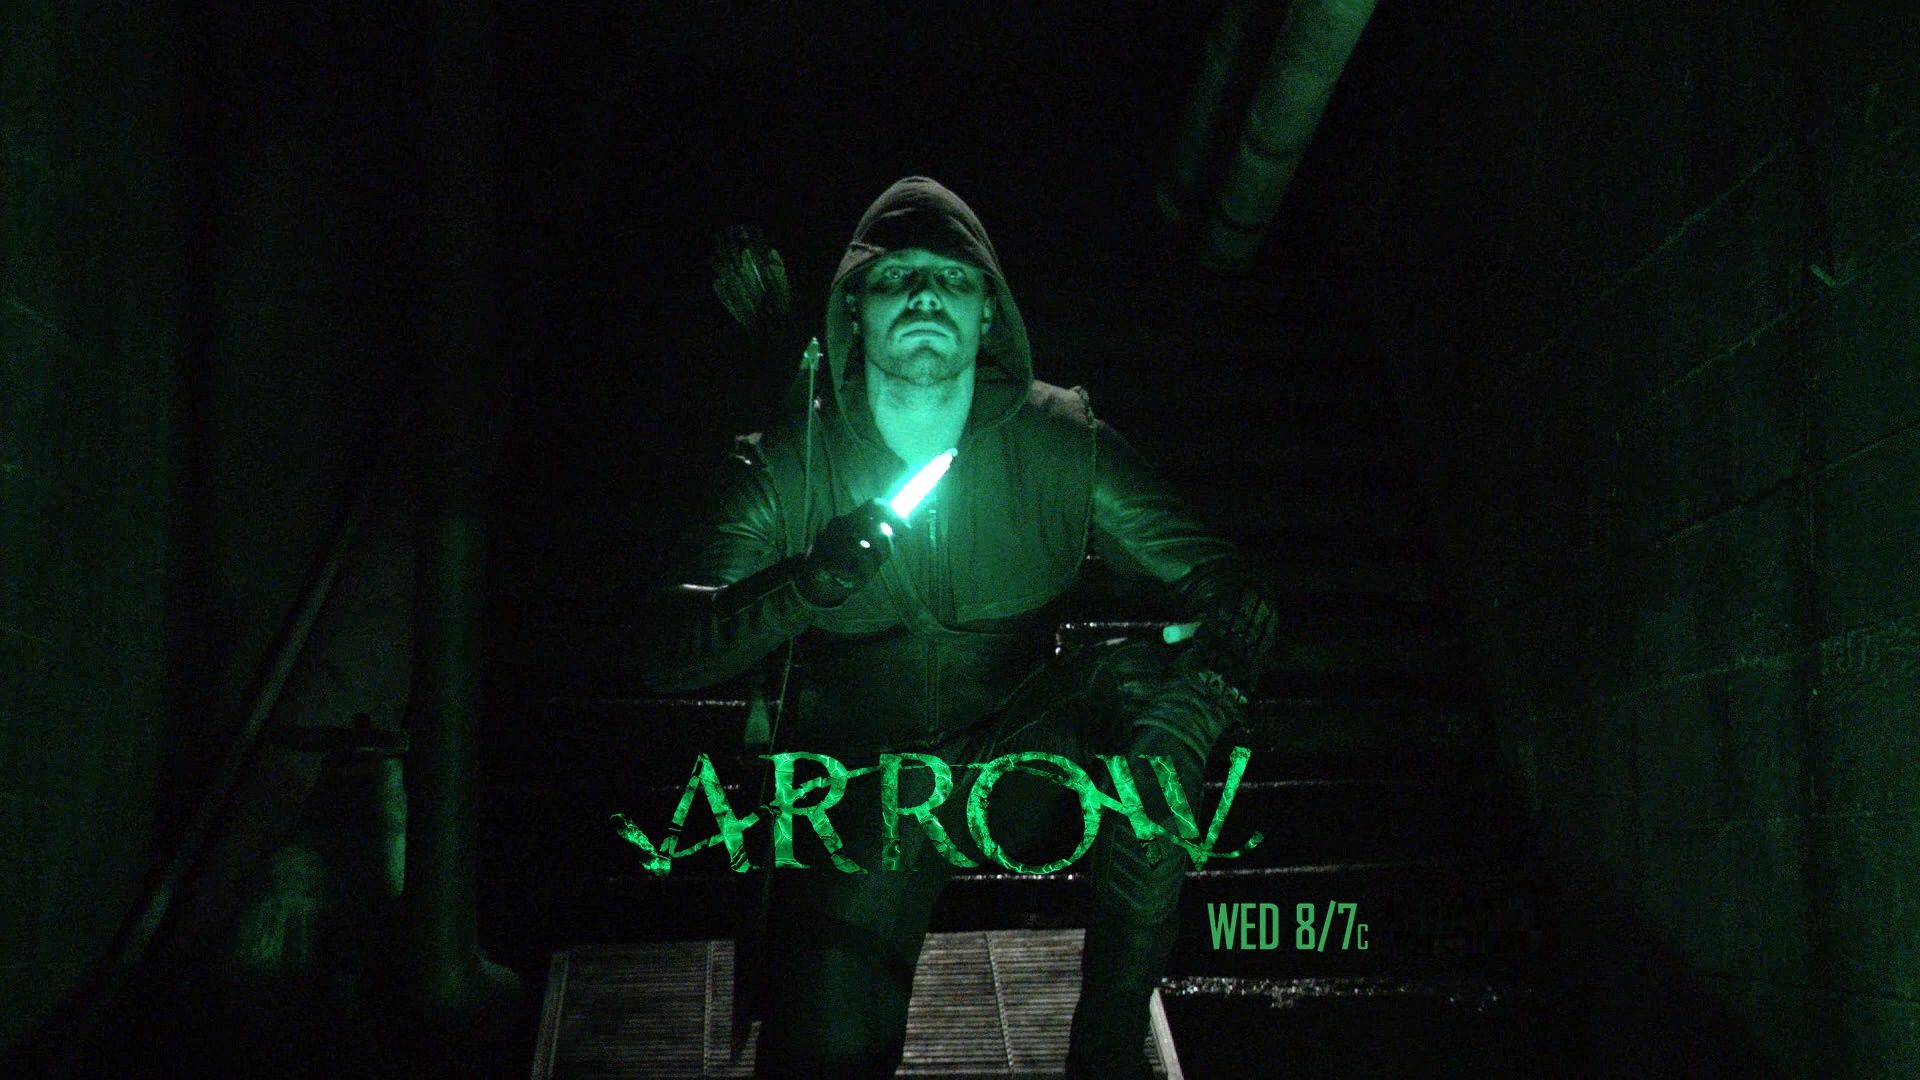 28 Arrow Season 7 Wallpapers On Wallpapersafari #8.2732, green arrow, fortnite, skin, outfit, 4k. 28 arrow season 7 wallpapers on